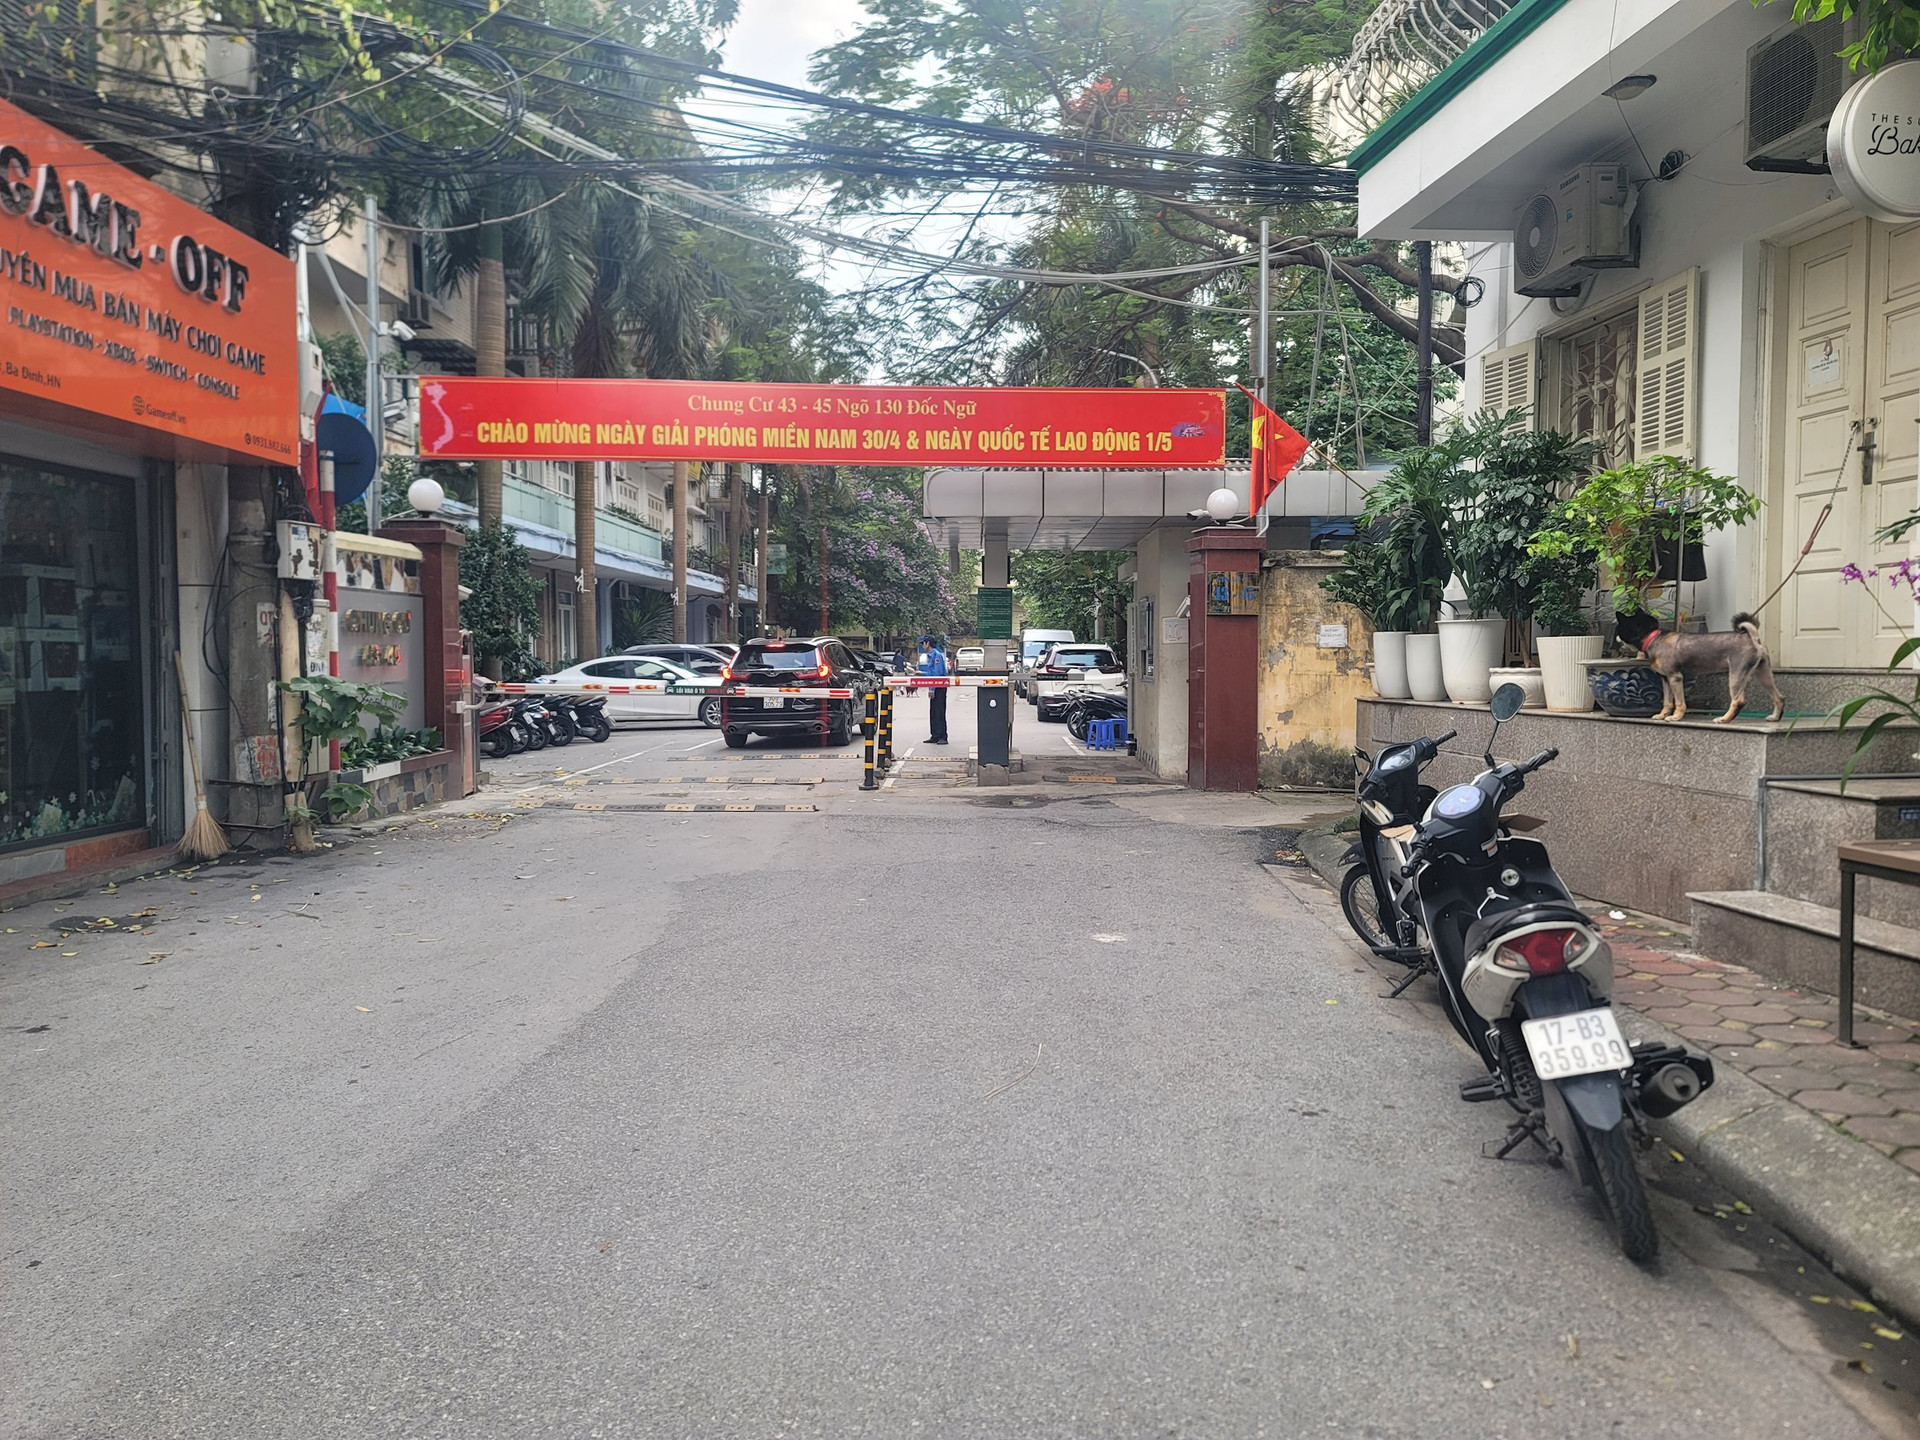 Chung cư 43 - 45 ngõ 130 Đốc Ngữ (quận Ba Đình, thành phố Hà Nội).